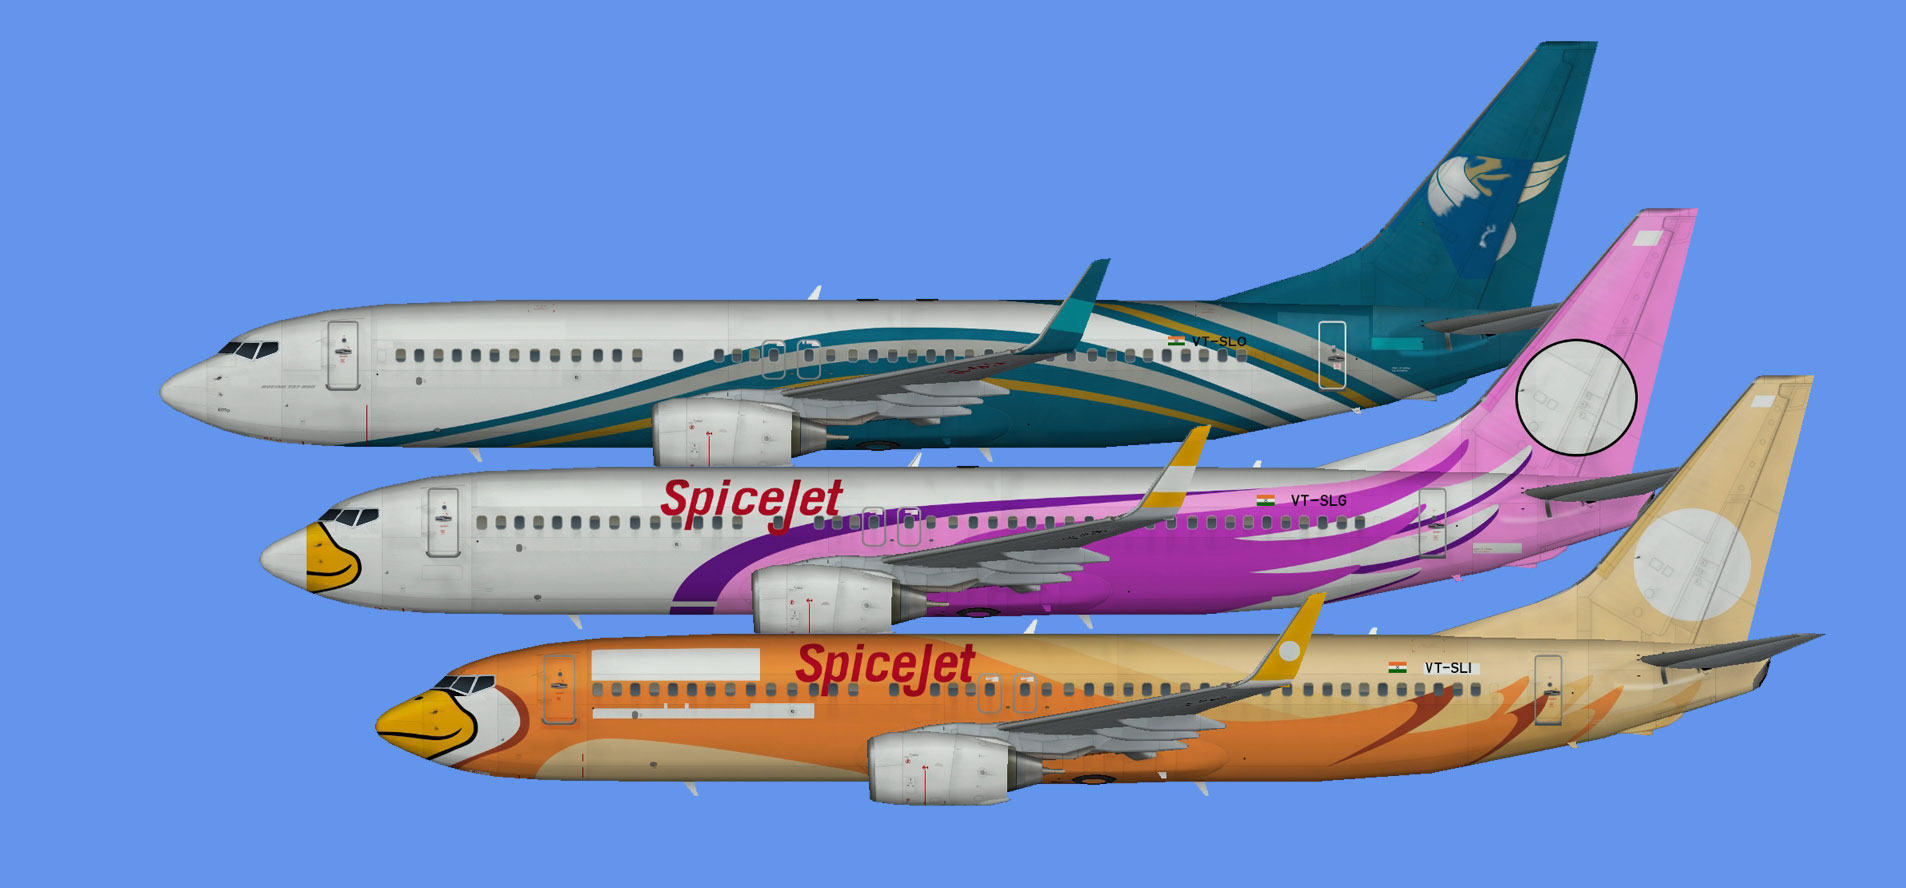 Spicejet 737-800 hybrids